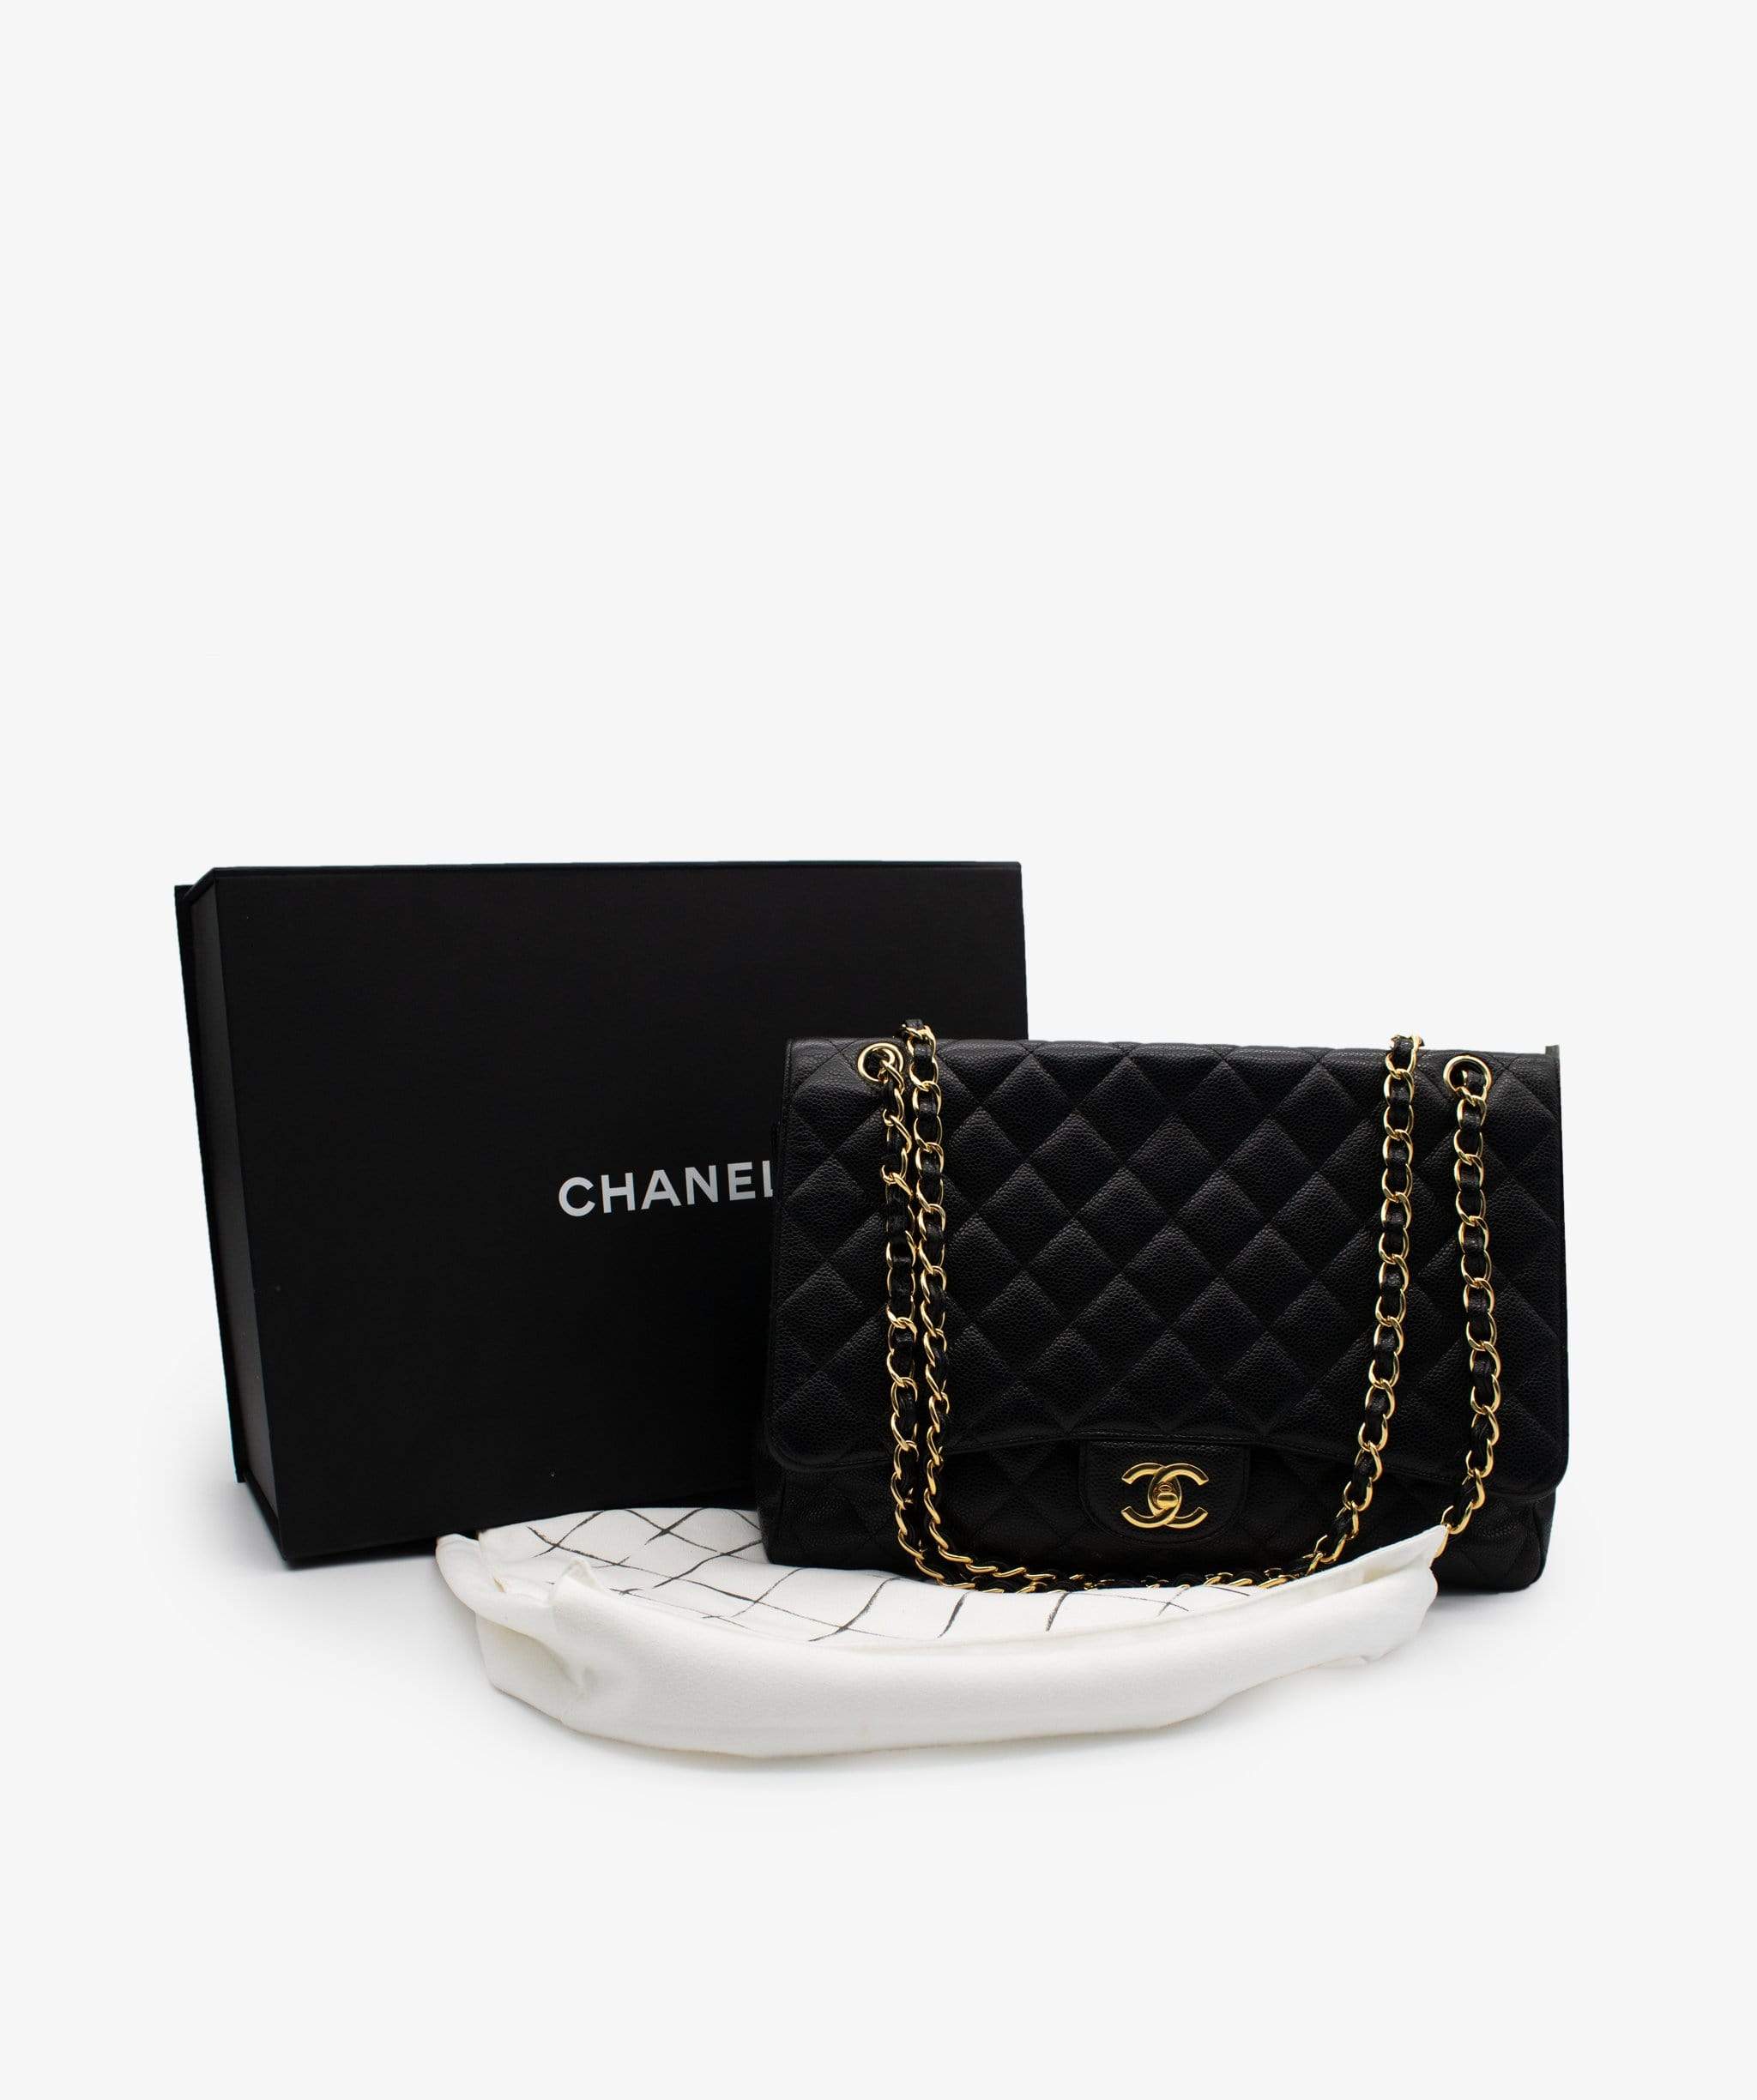 Chanel Chanel Maxi Caviar Black GHW Flapbag